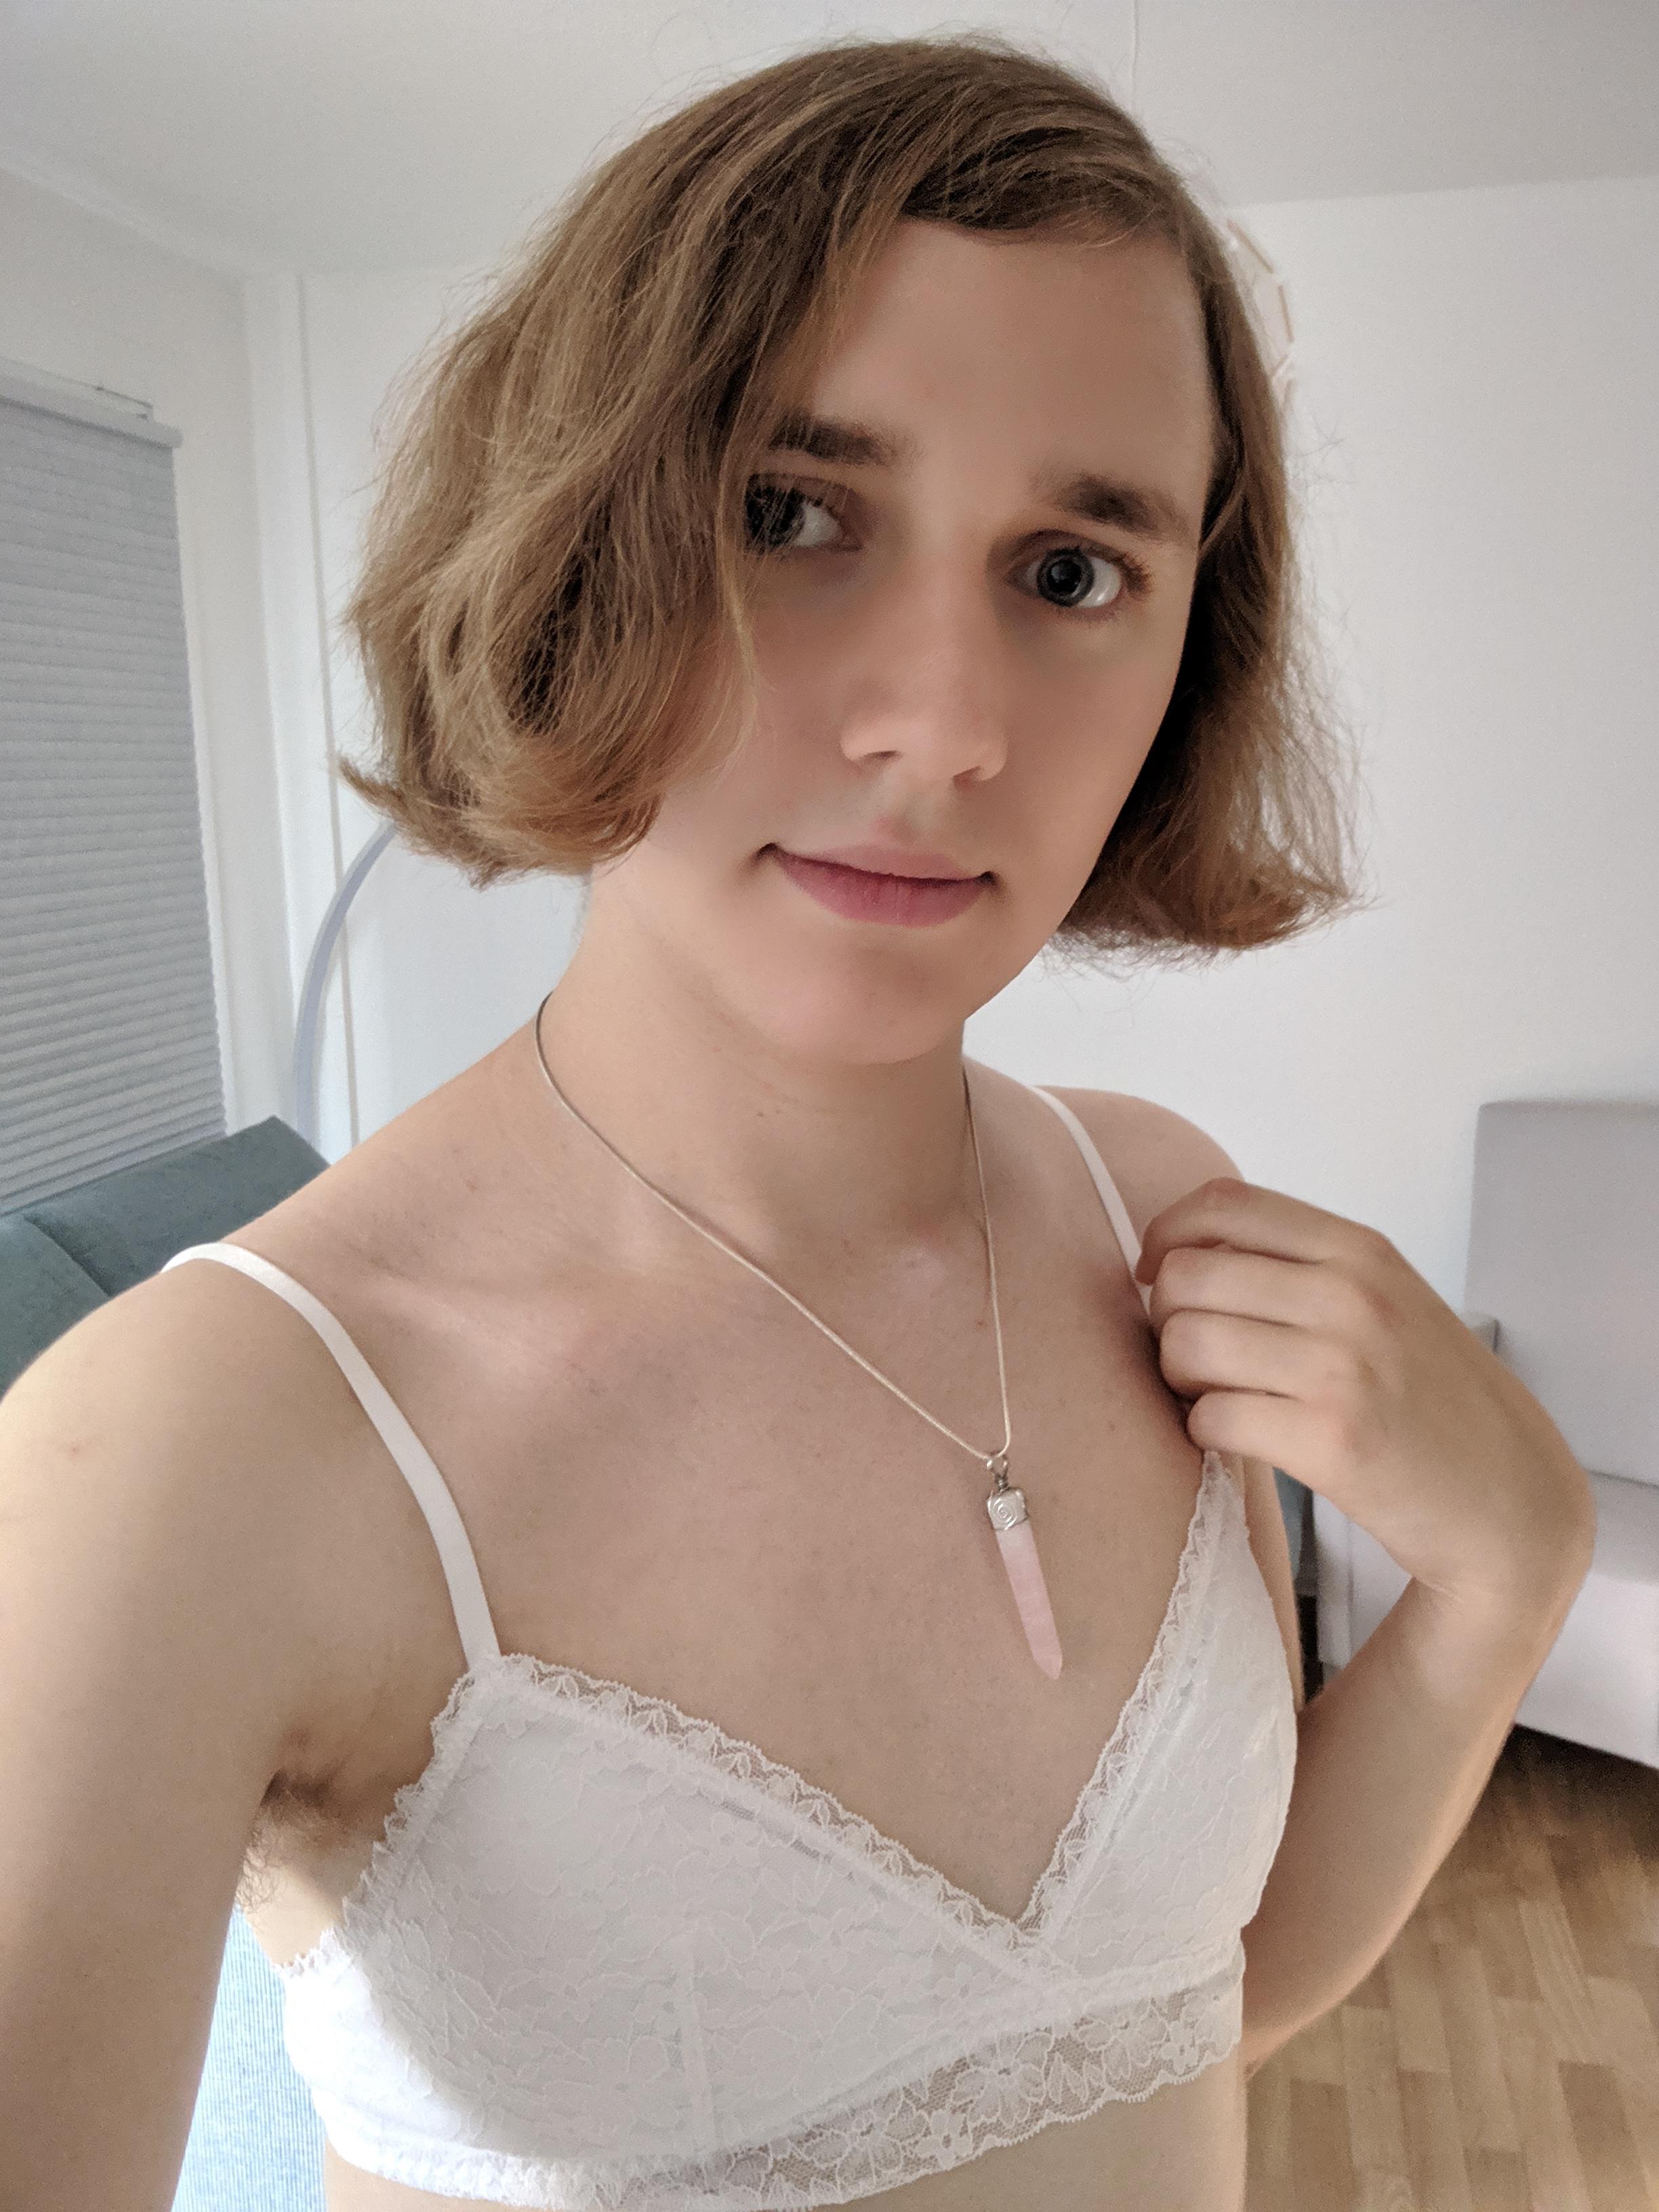 I finally got my first bra after 3 months of HRT! I'm happy :D